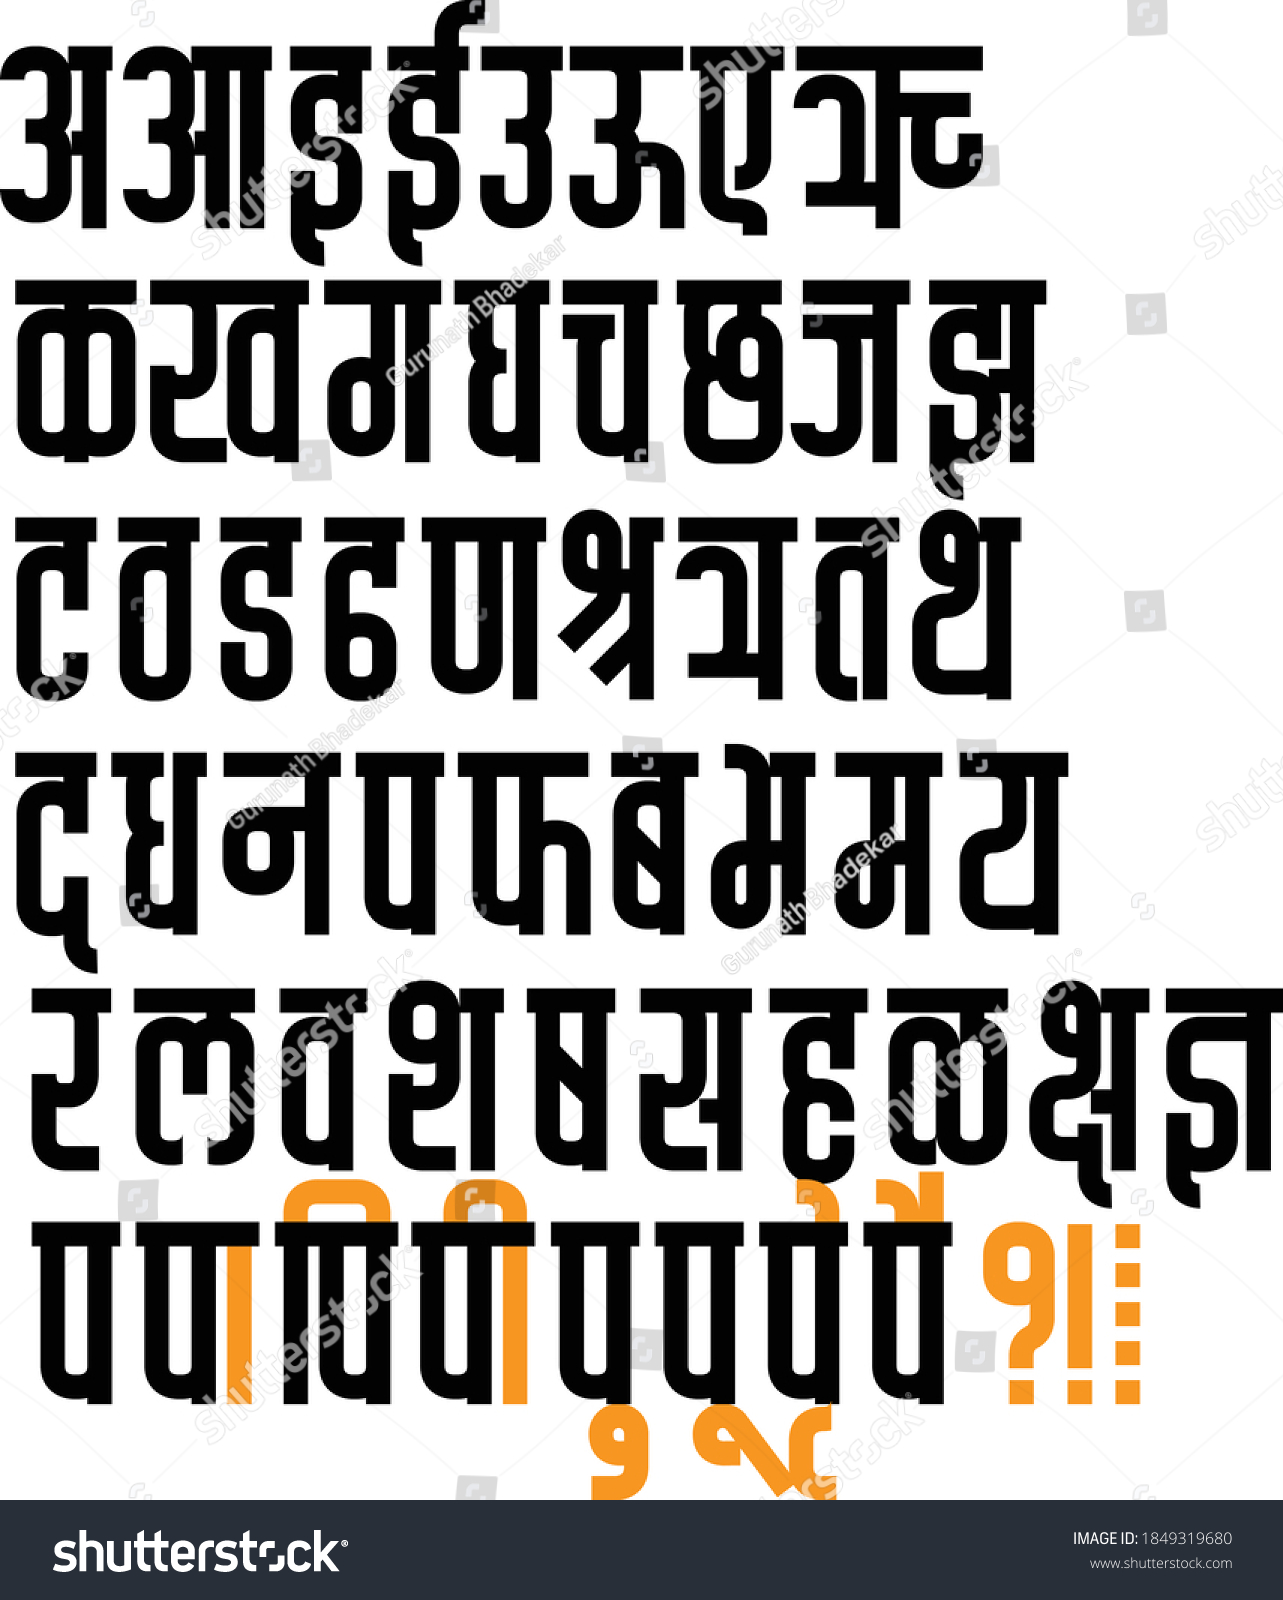 SVG of Handmade Devanagari font for Indian languages Hindi, Sanskrit and Marathi Indian languages svg